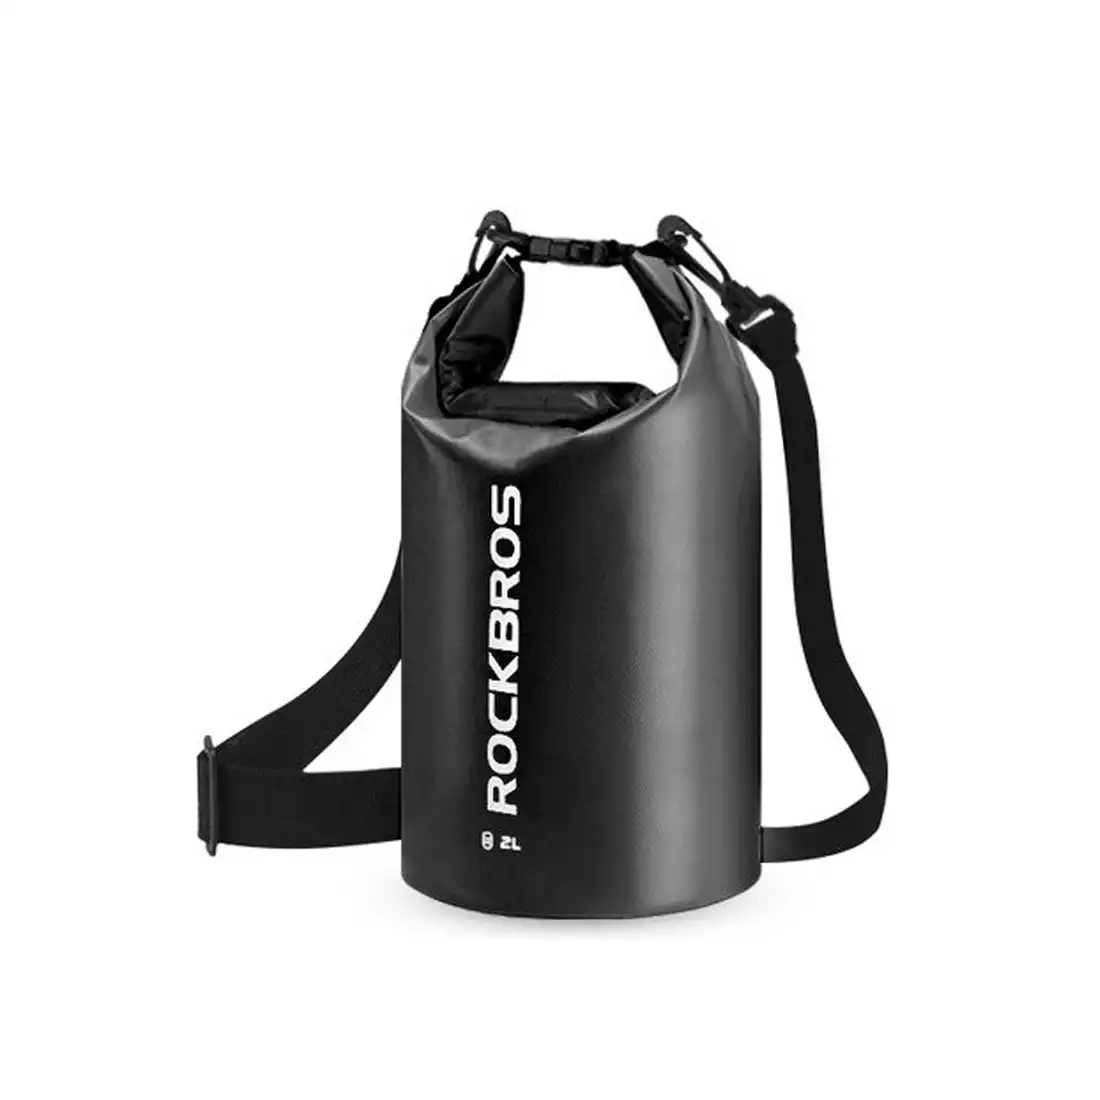 Rockbros wodoodporny plecak/worek 2L, czarny ST-001BK